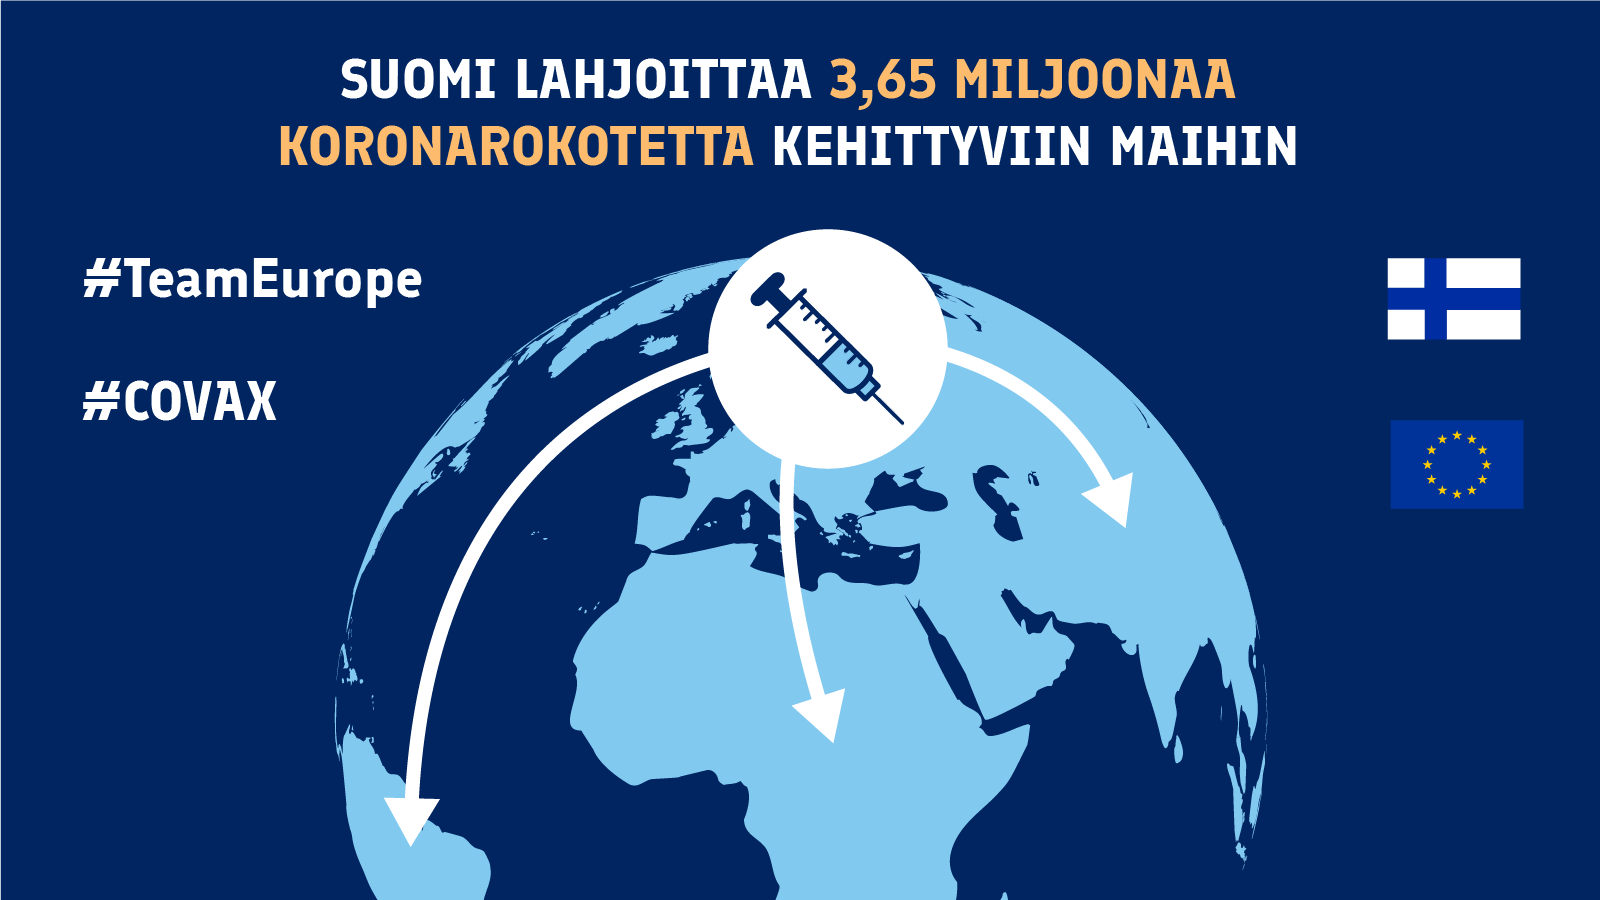 Suomi lahjoittaa 3,65 miljoonaa koronarokotetta kehittyviin maihin. Kuvassa maapallon ja rokoteruisku, mistä lähtee nuolia Suomesta eri maanosiin.